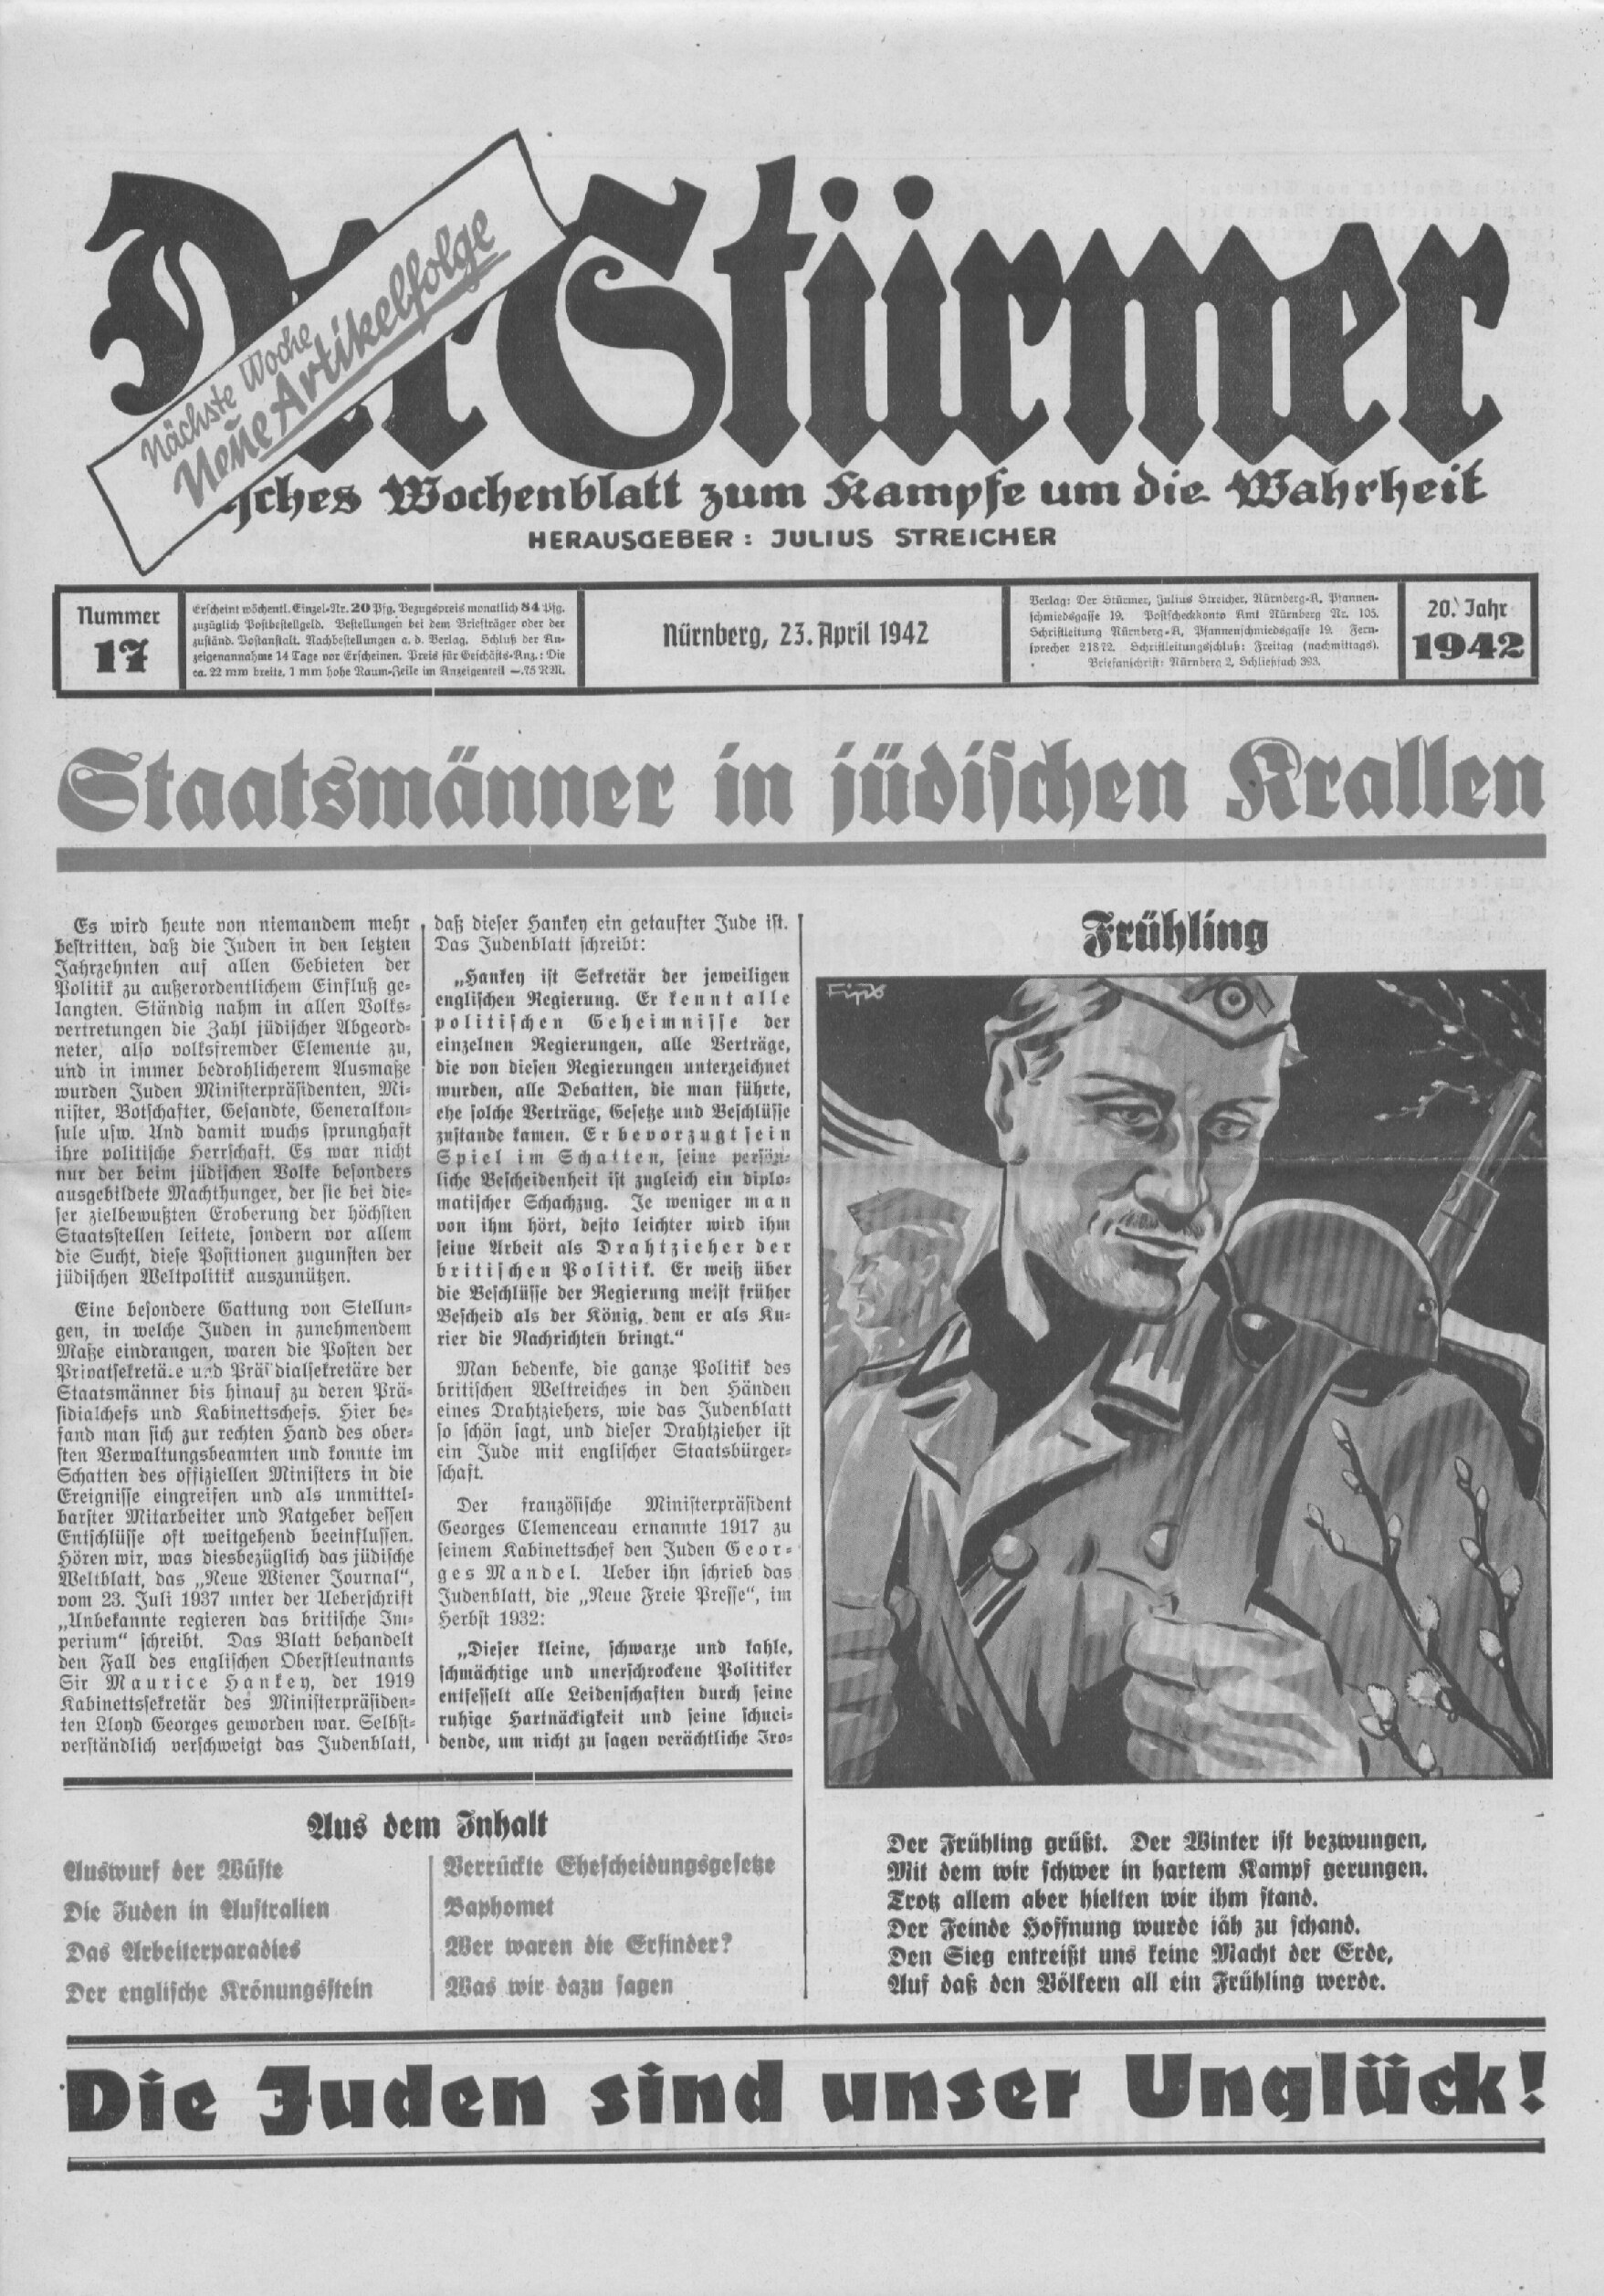 Der Stürmer - 1942 Nr. 17 - Staatsmänner in jüdischen Krallen